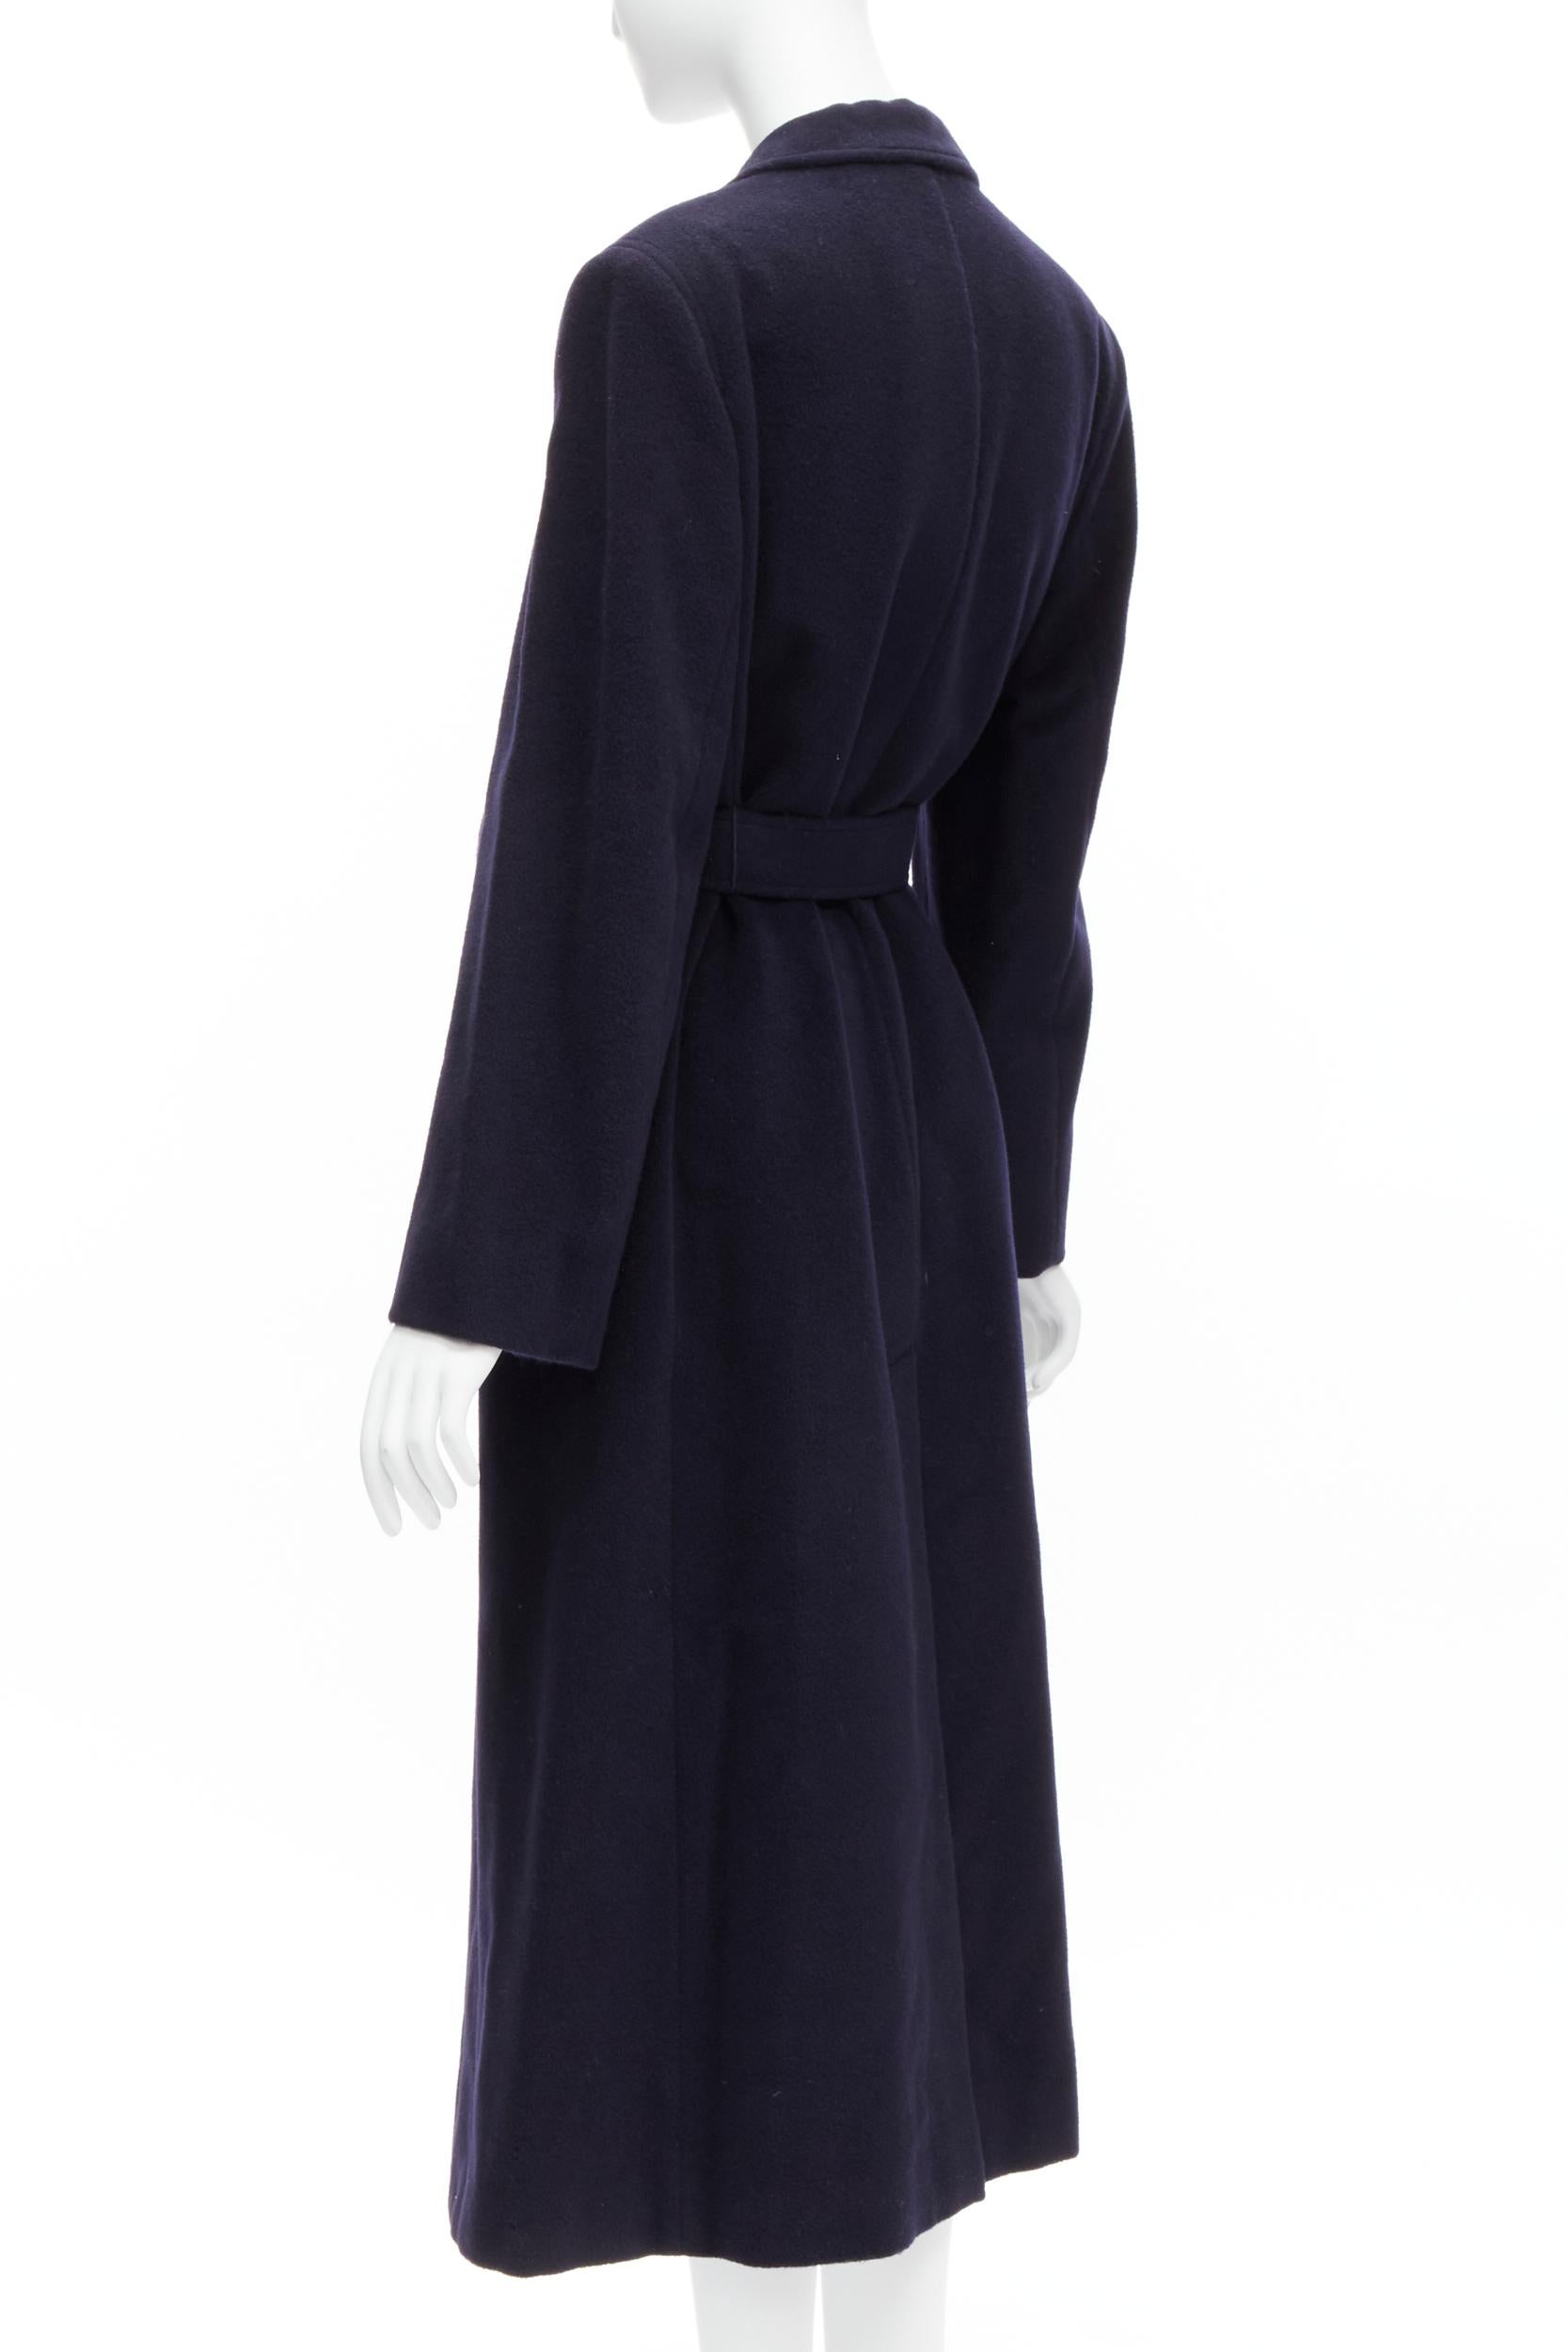 MAX MARA dark navy 100% virgin wool belted longline robe coat IT42 M 3